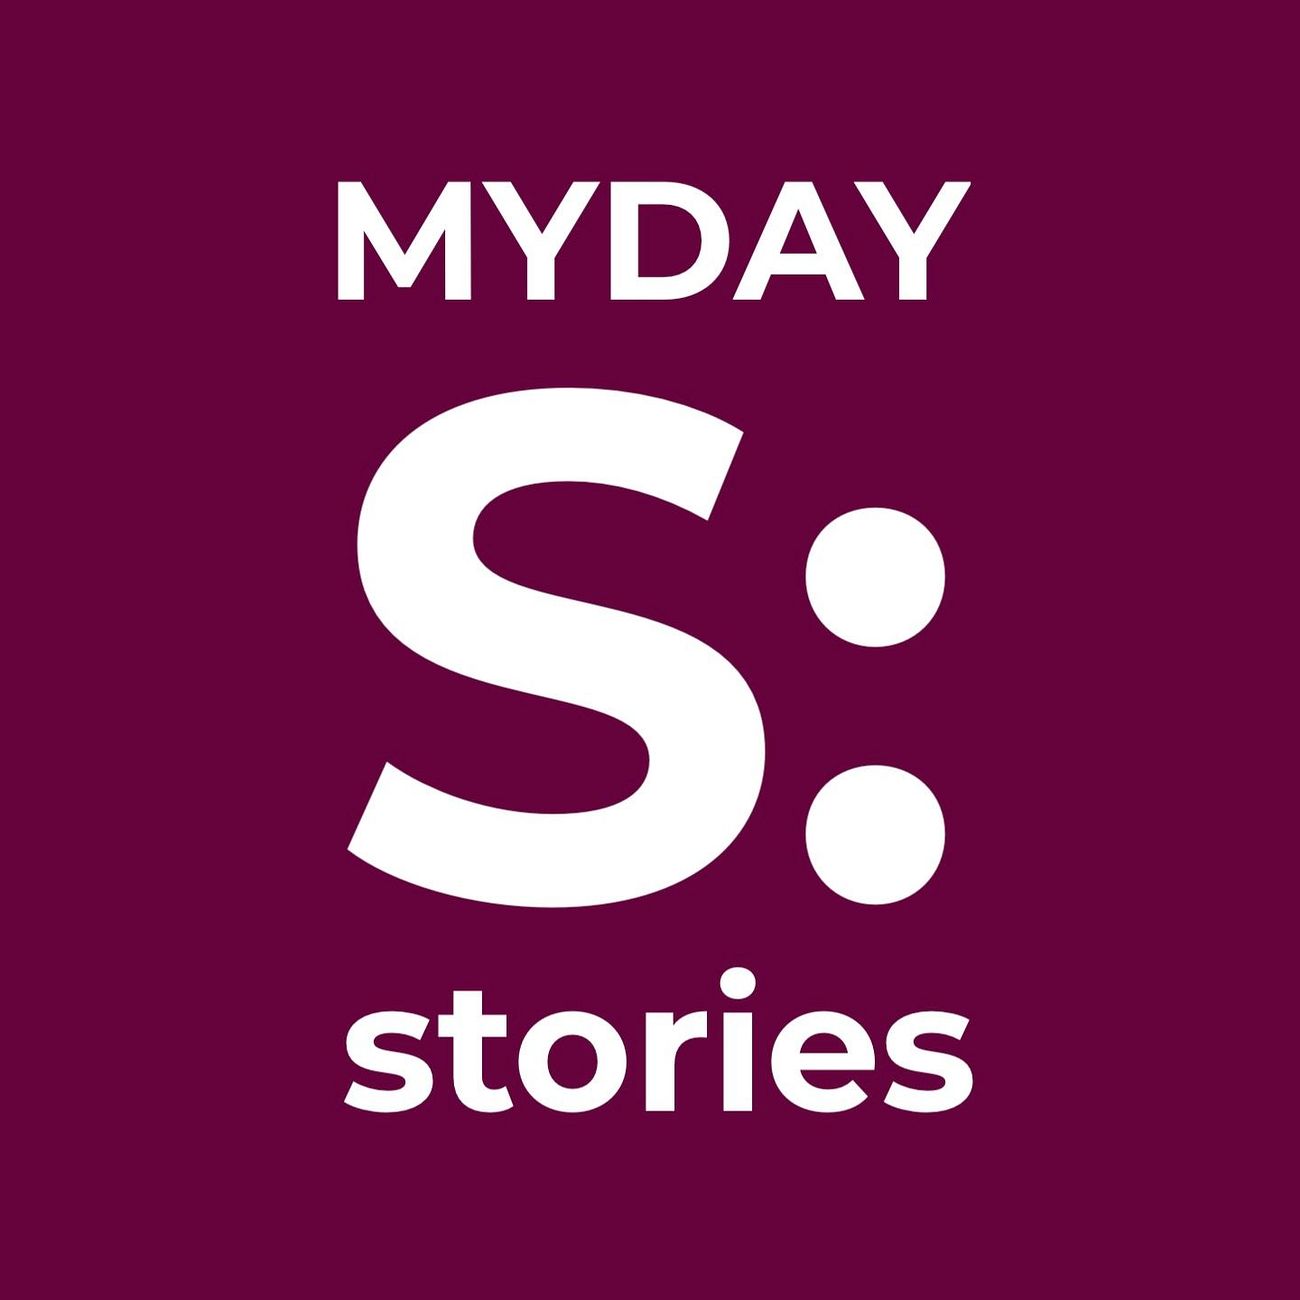 MYDAY STORIES